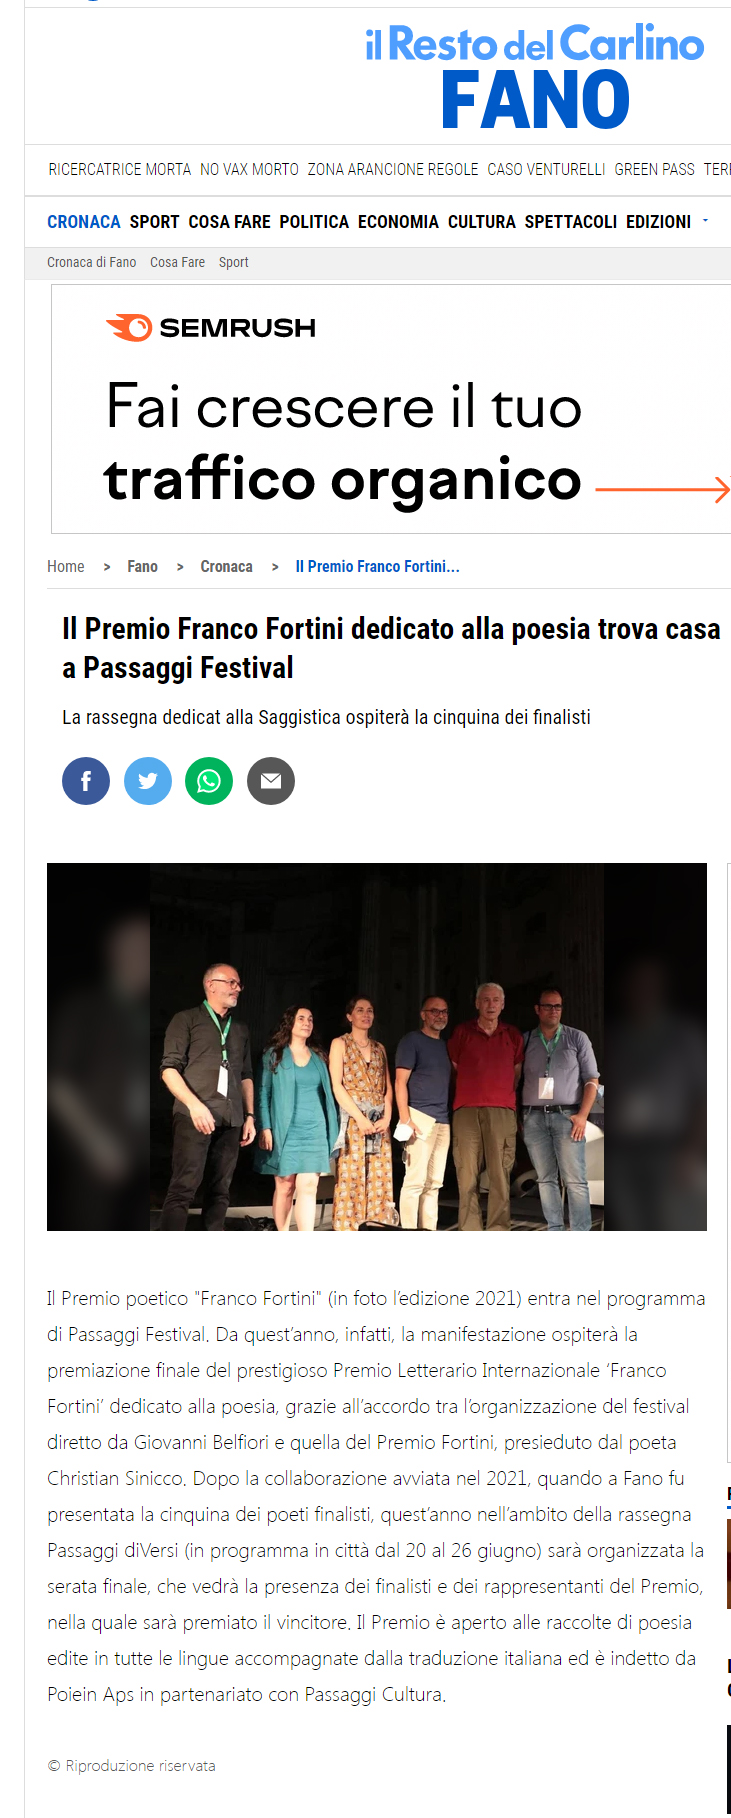 ilrestodelcarlino-it-fano-cronaca-il-premio-franco-fortini-dedicato-alla-poesia-trova-casa-a-passaggi-festival